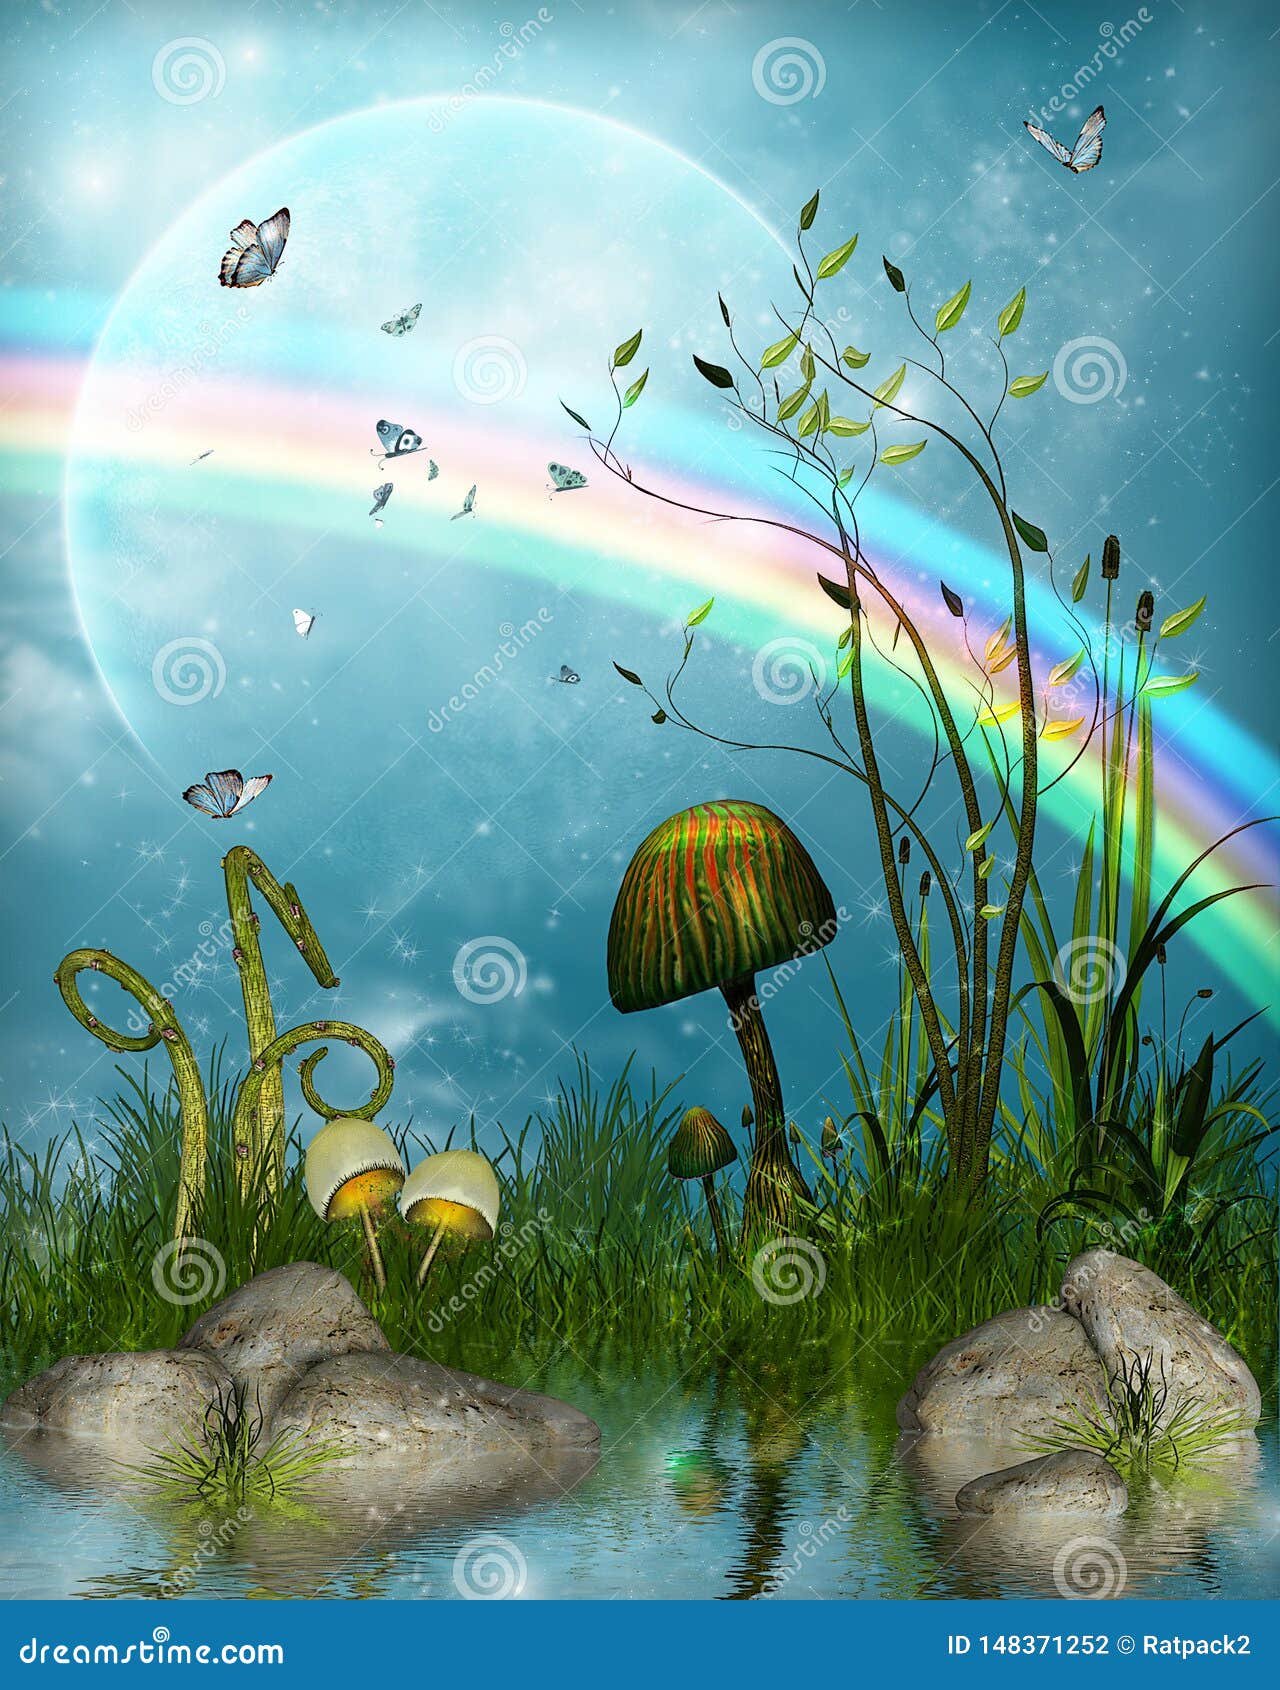 magical fairytale landscape under a rainbow